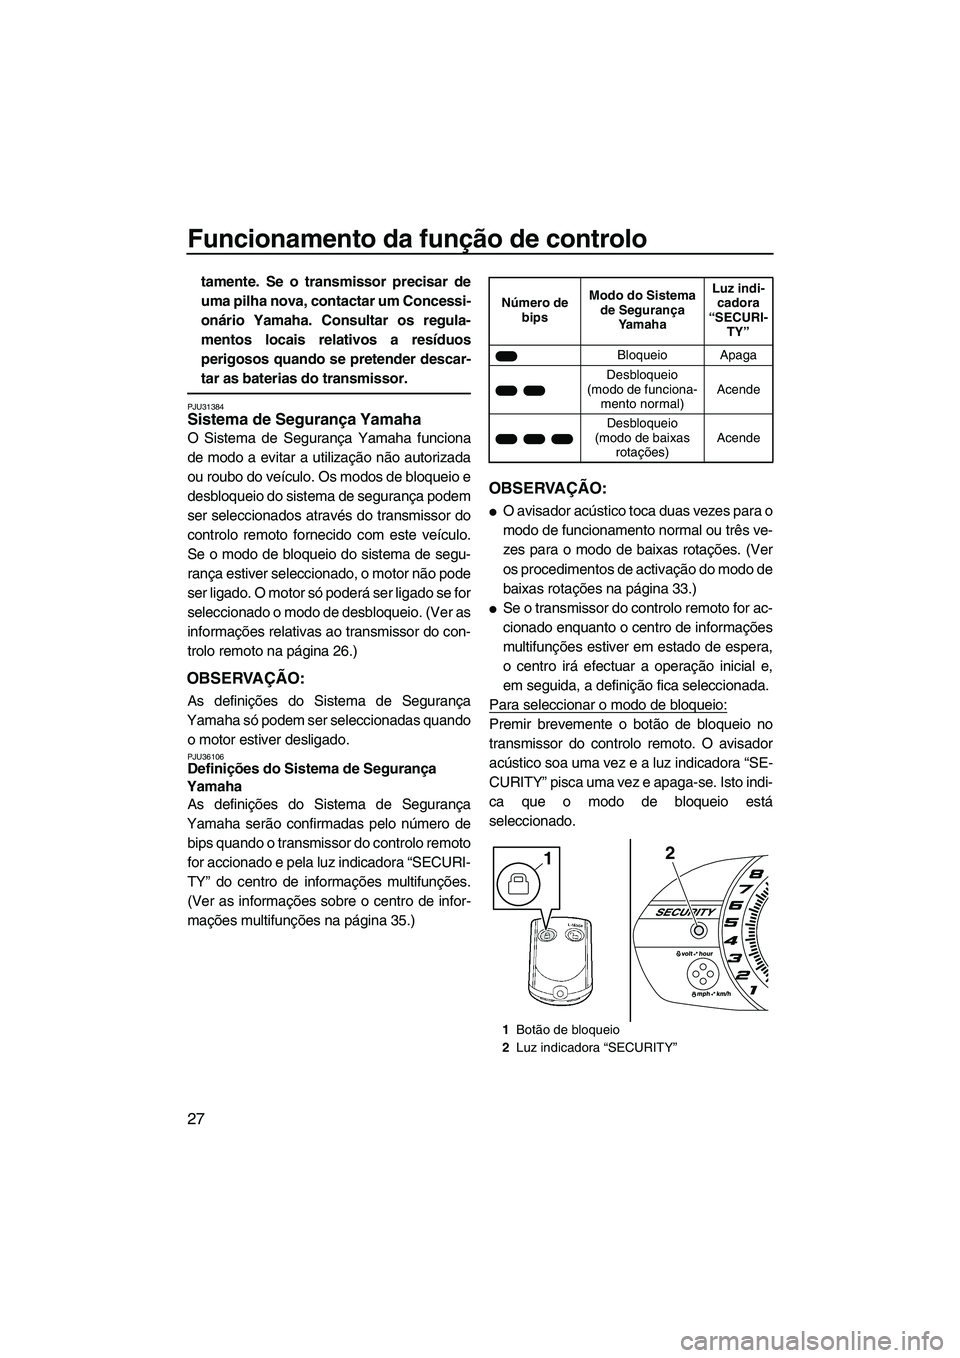 YAMAHA VXR 2013  Manual de utilização (in Portuguese) Funcionamento da função de controlo
27
tamente. Se o transmissor precisar de
uma pilha nova, contactar um Concessi-
onário Yamaha. Consultar os regula-
mentos locais relativos a resíduos
perigosos